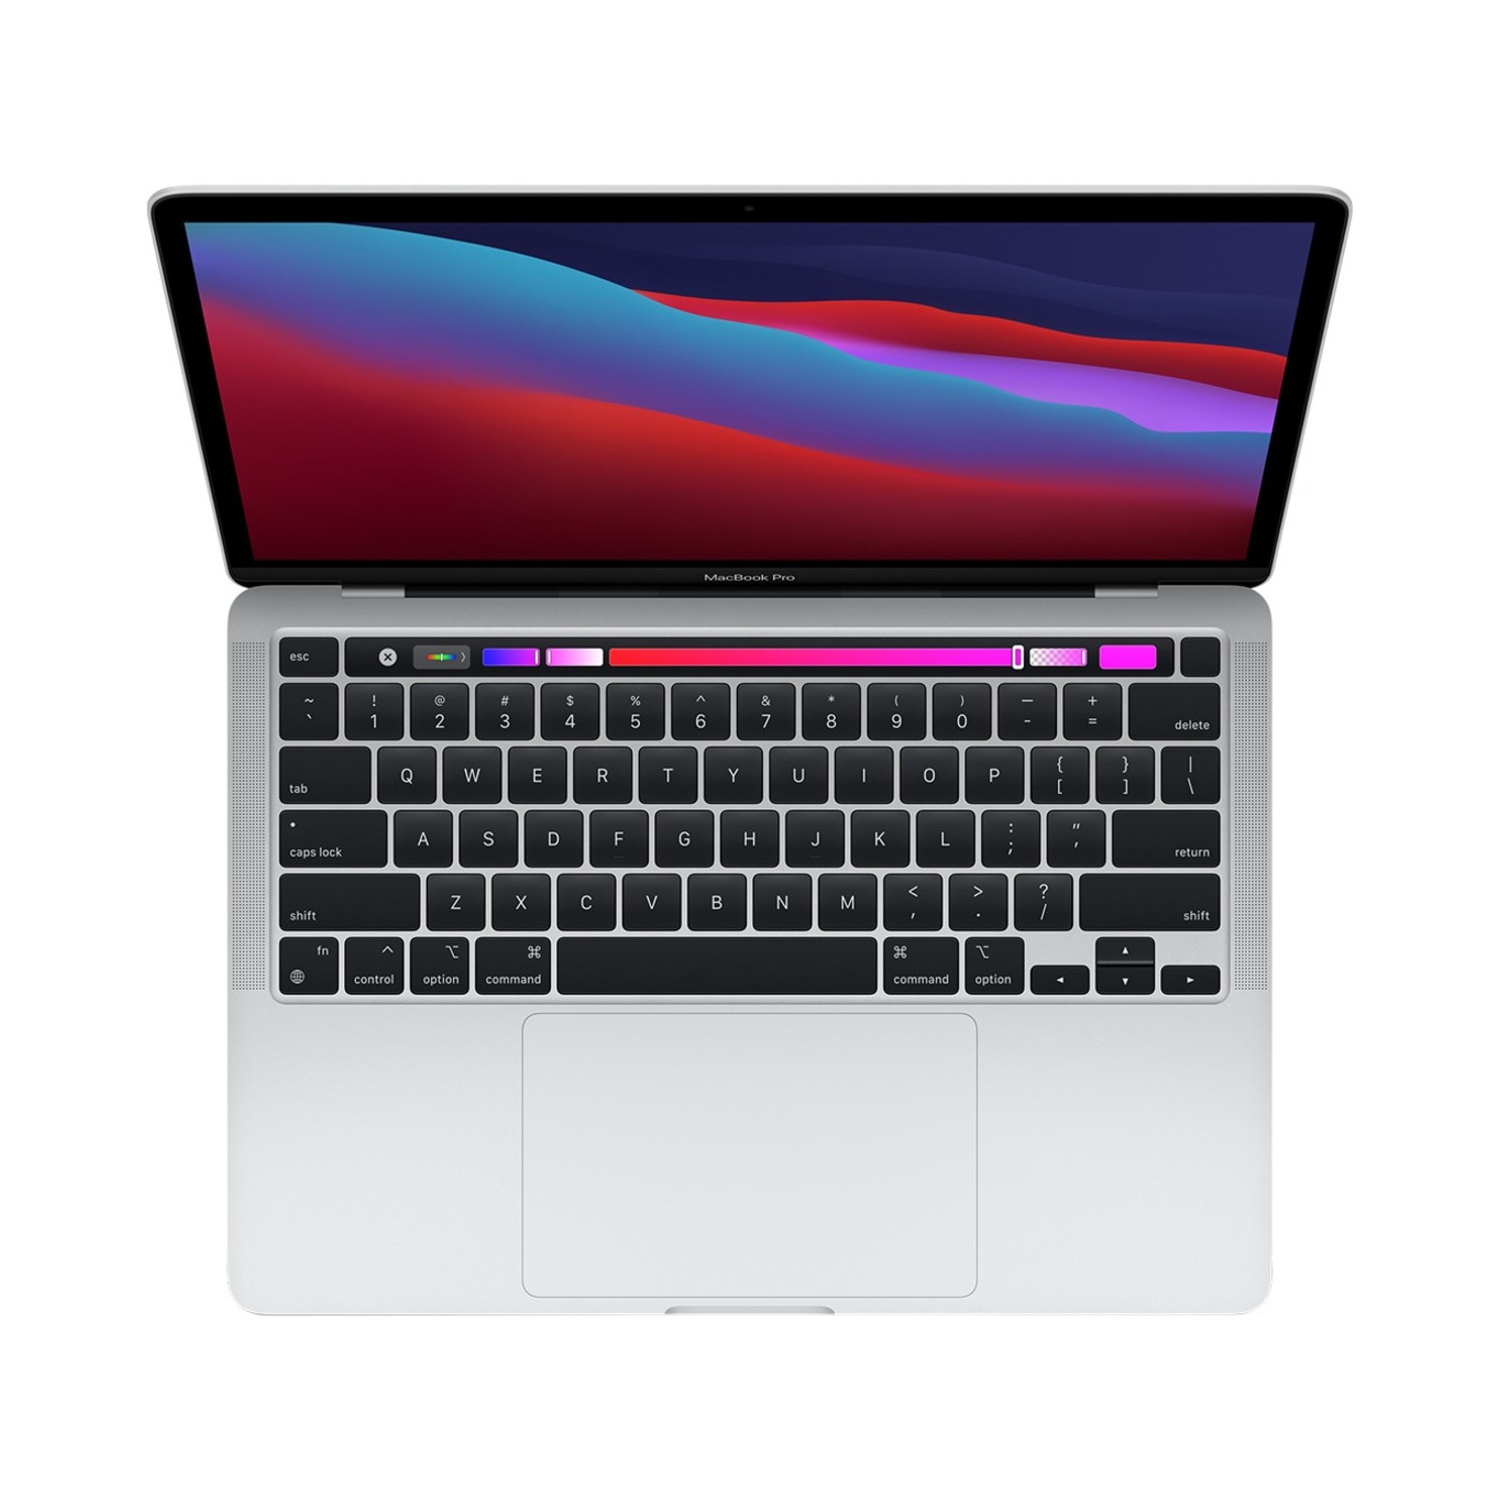 Apple MacBook Pro (Fall 2020) 13.3"w/ Touch Bar - Silver (Apple M1 Chip / 256GB SSD / 8GB RAM) - En - Open Box